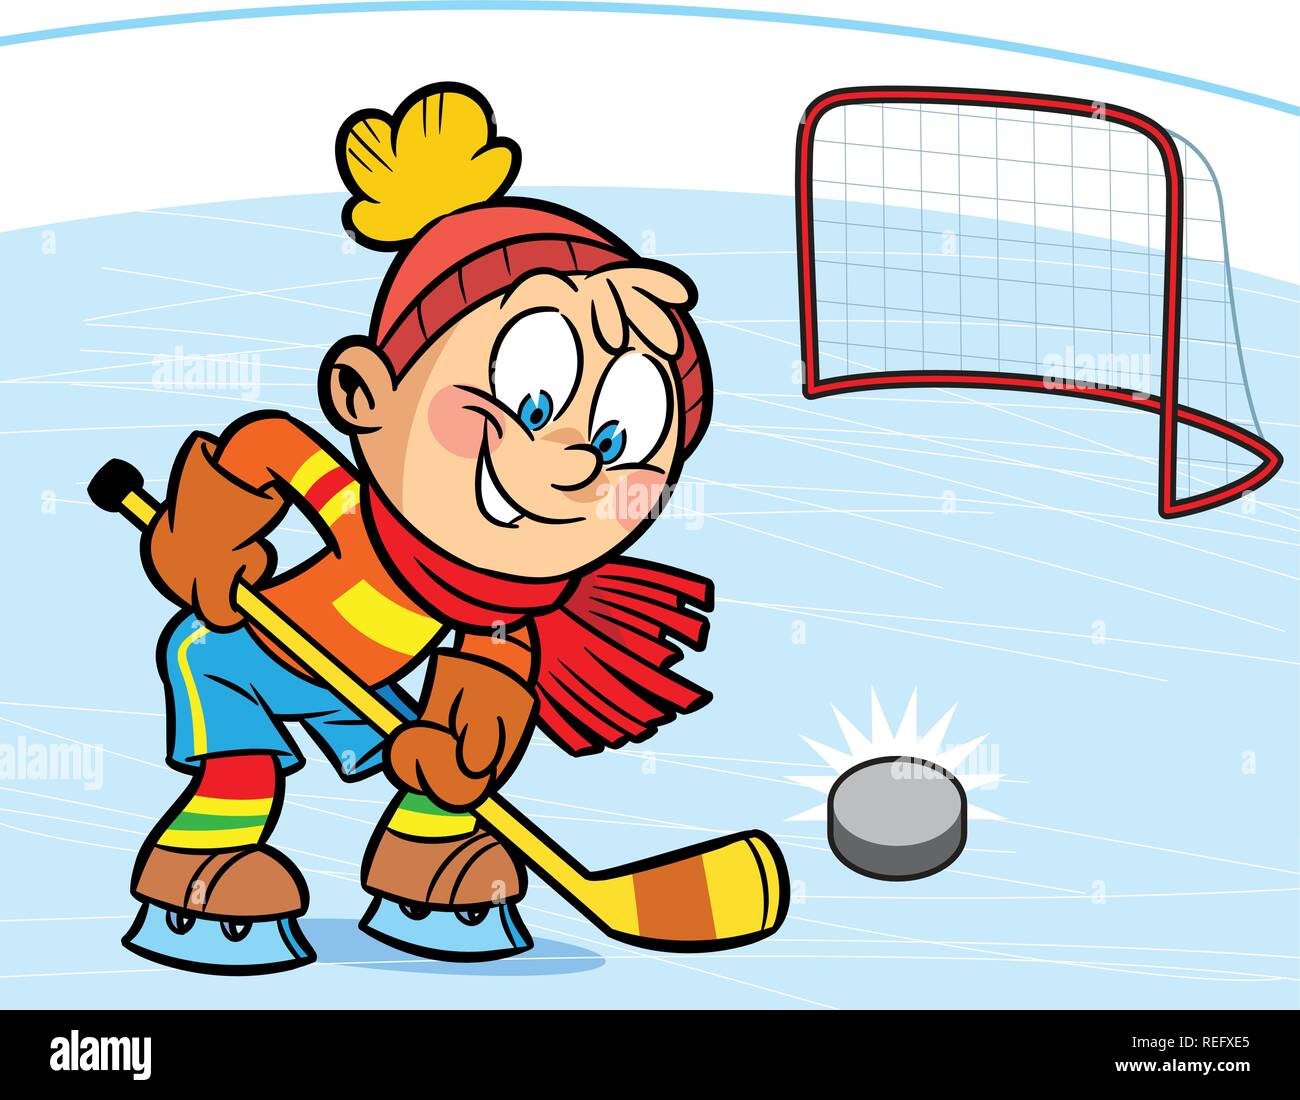 Un ragazzo giocare ad hockey. Ha segnato il puck nell'obiettivo. Illustrazione fatta in stile cartoon. Illustrazione Vettoriale